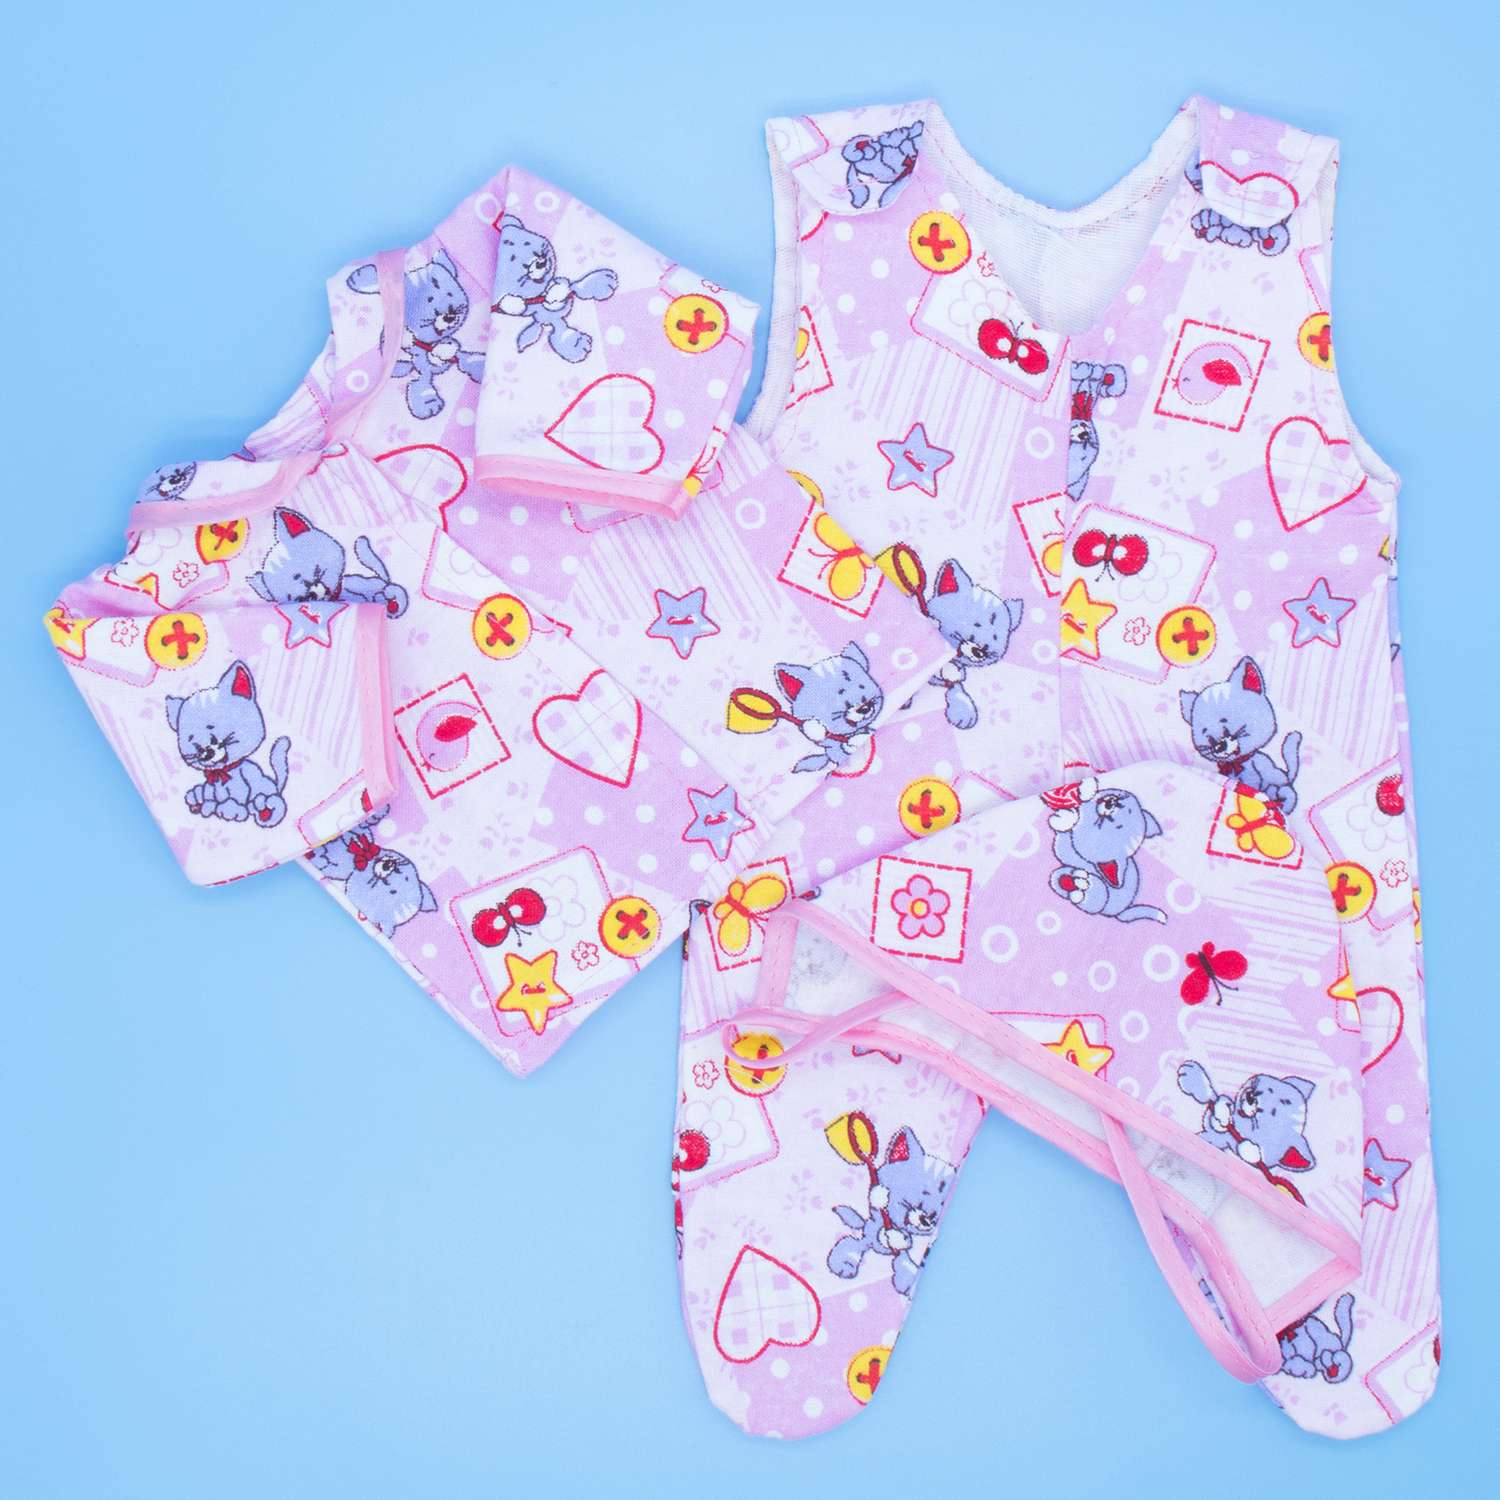 Комплект одежды Модница для пупса 43-48 см из фланели розовый-сиреневый 6101розовый-сиреневый - фото 1